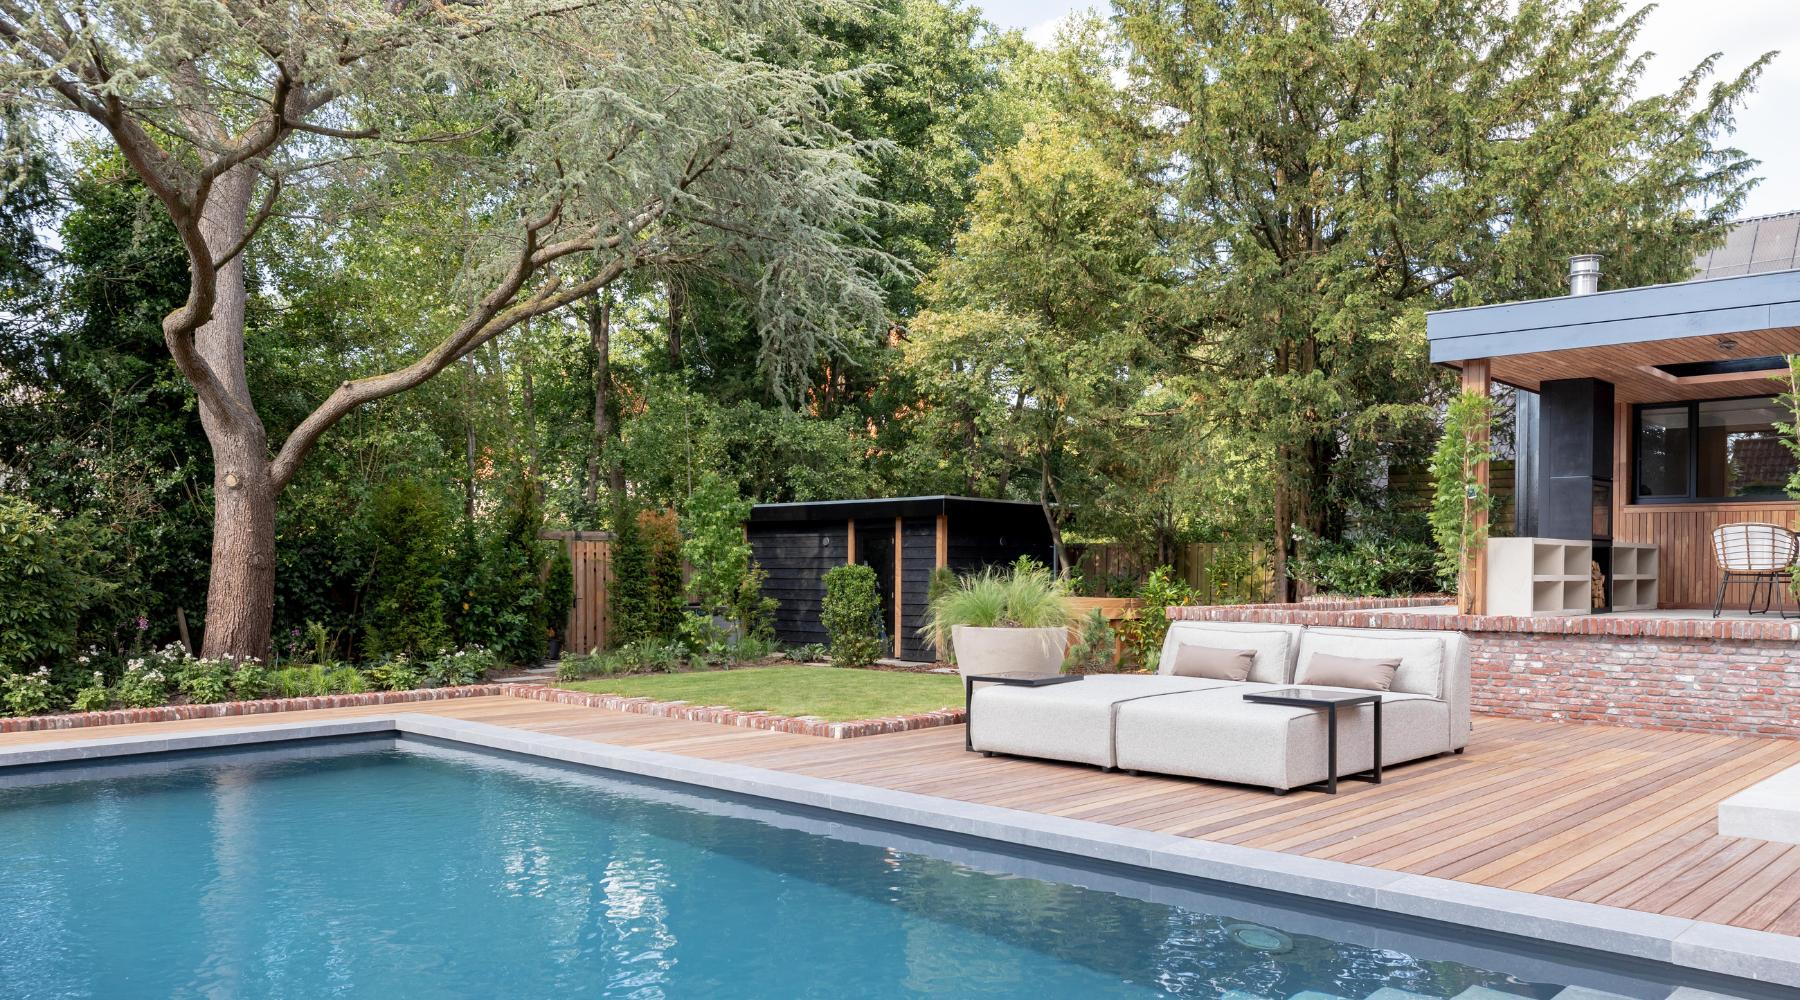 Creëer een vakantieparadijs in je eigen tuin met de all-weather loungeset van Bubalou. 